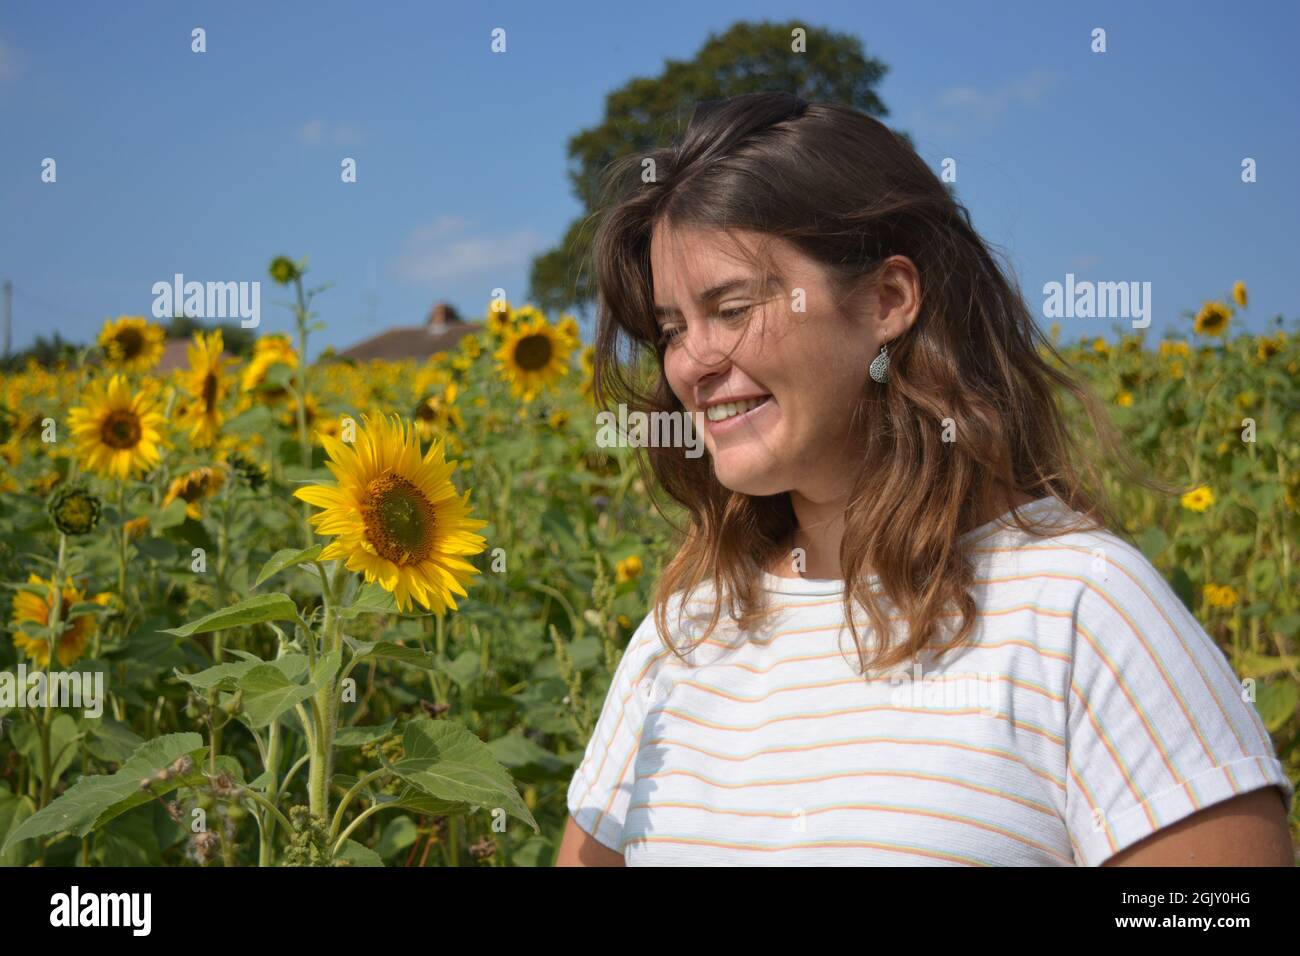 Glückliche, sorglose junge Frau im Spätsommer auf einem Sonnenblumenfeld Stockfoto